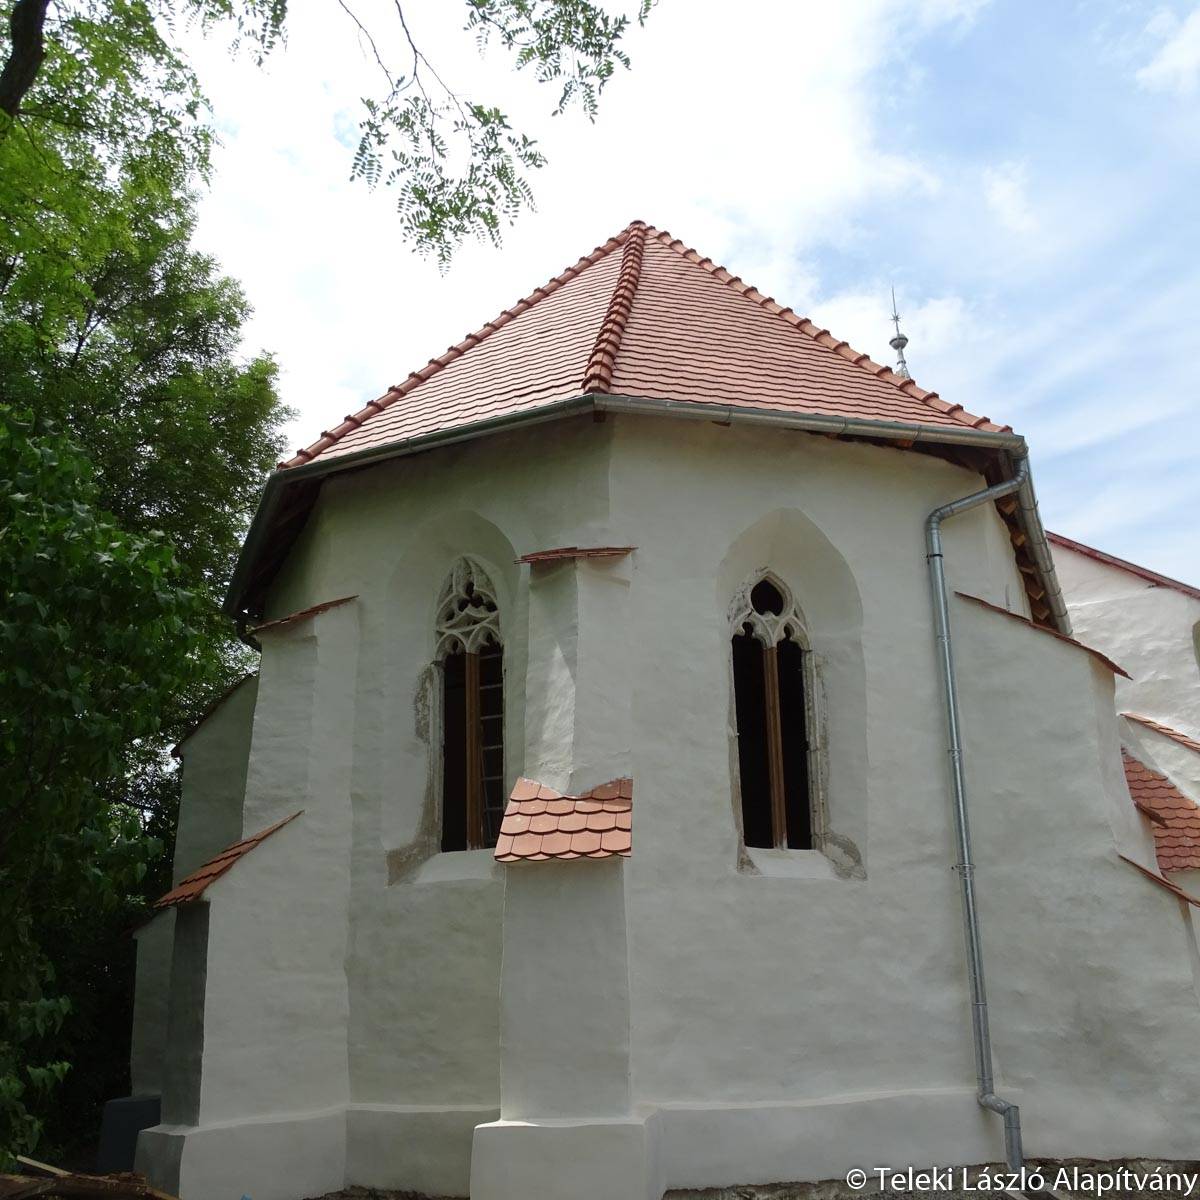 Tatárfej helyett Szent Kristóf-ábrázolás lehet a magyar támogatásból felújított küküllővári templom kuriózuma